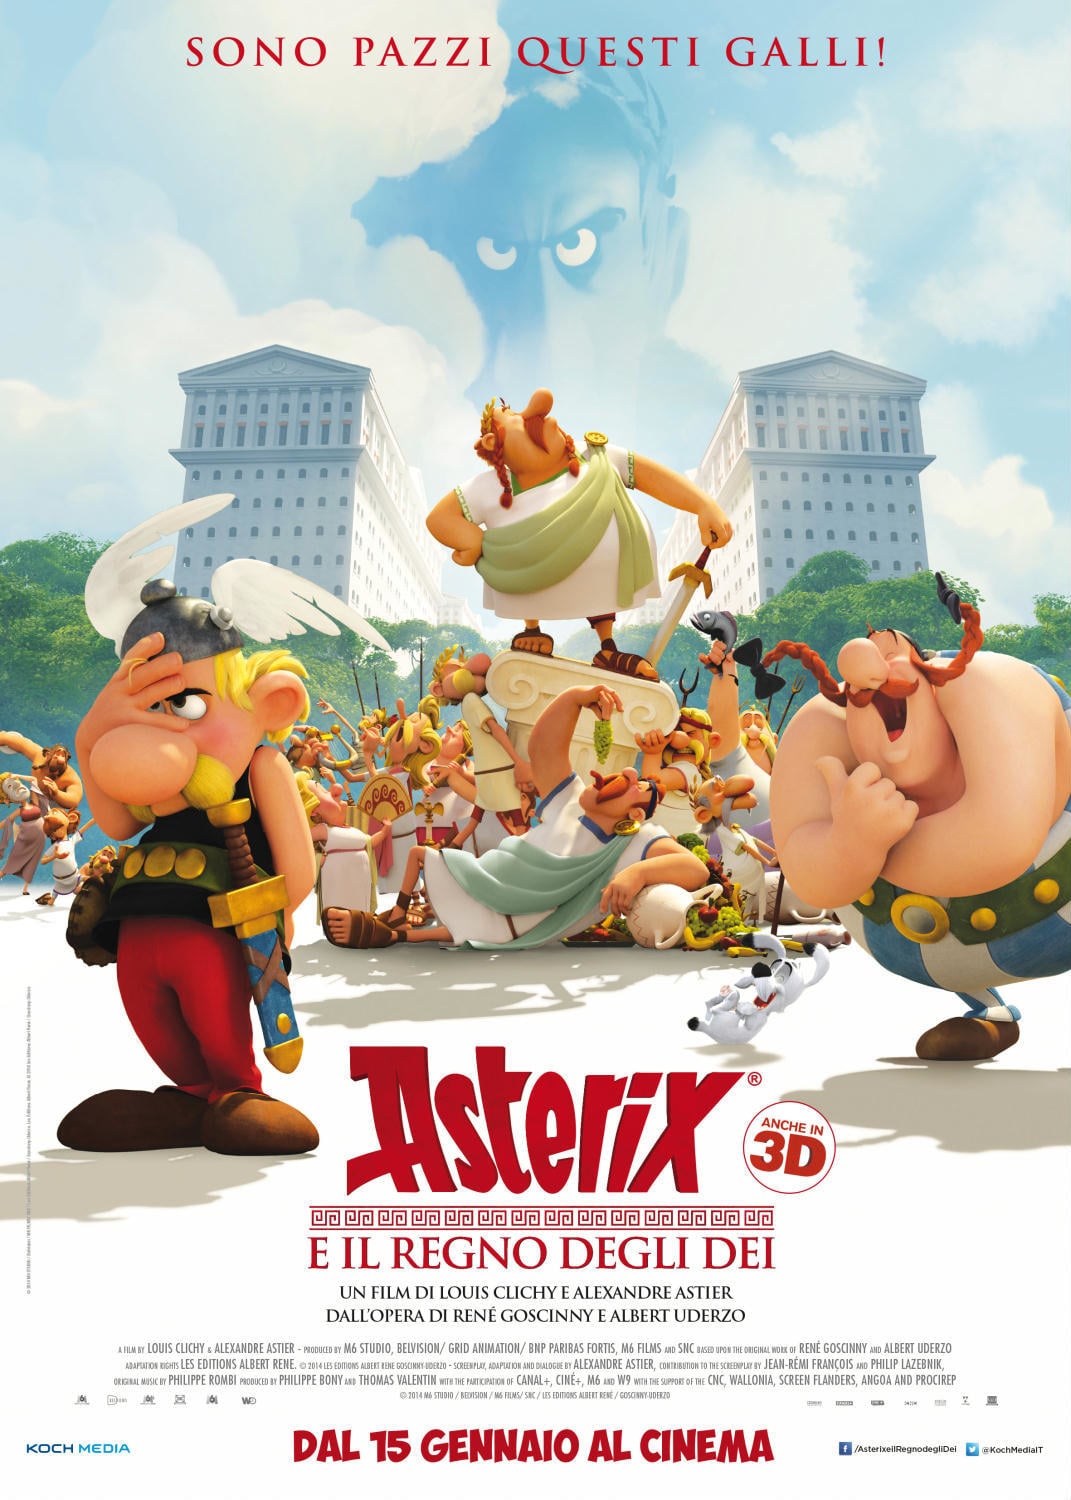 Poster for the movie "Asterix e il Regno degli dei"